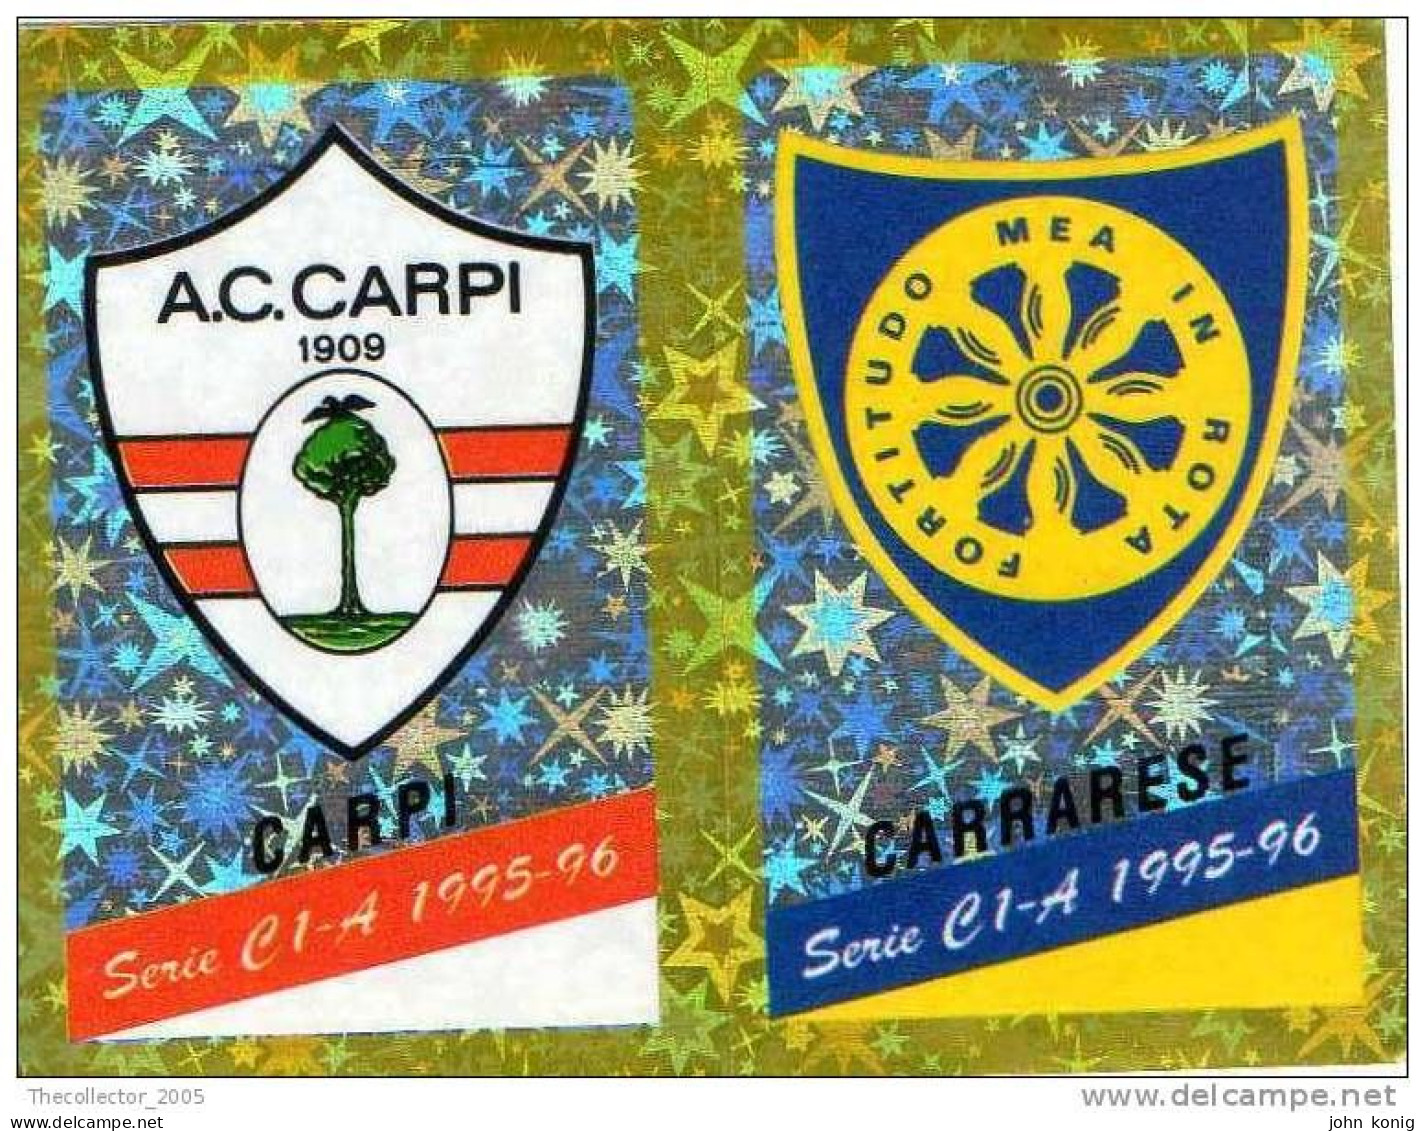 CALCIATORI - CALCIO Figurine Panini-calciatori 1995-96-n.527ab-scudetto Carpi-Carrarese (prismatico) - NUOVA-MAI INCOLLA - Italian Edition